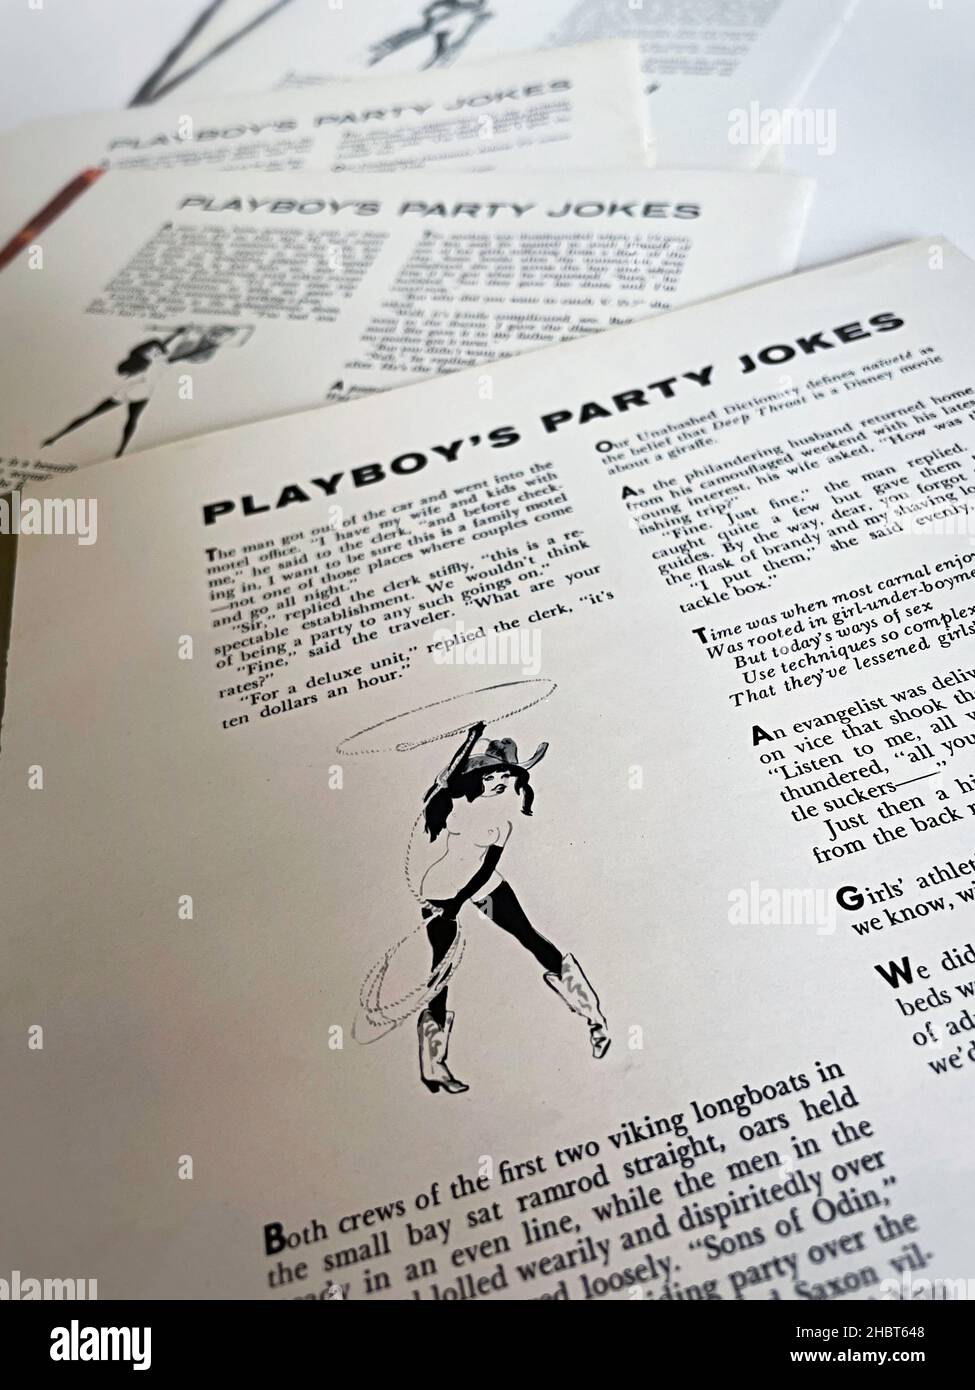 Vintage 1973 Playboy Magazine Party Witze Seiten, USA Stockfoto